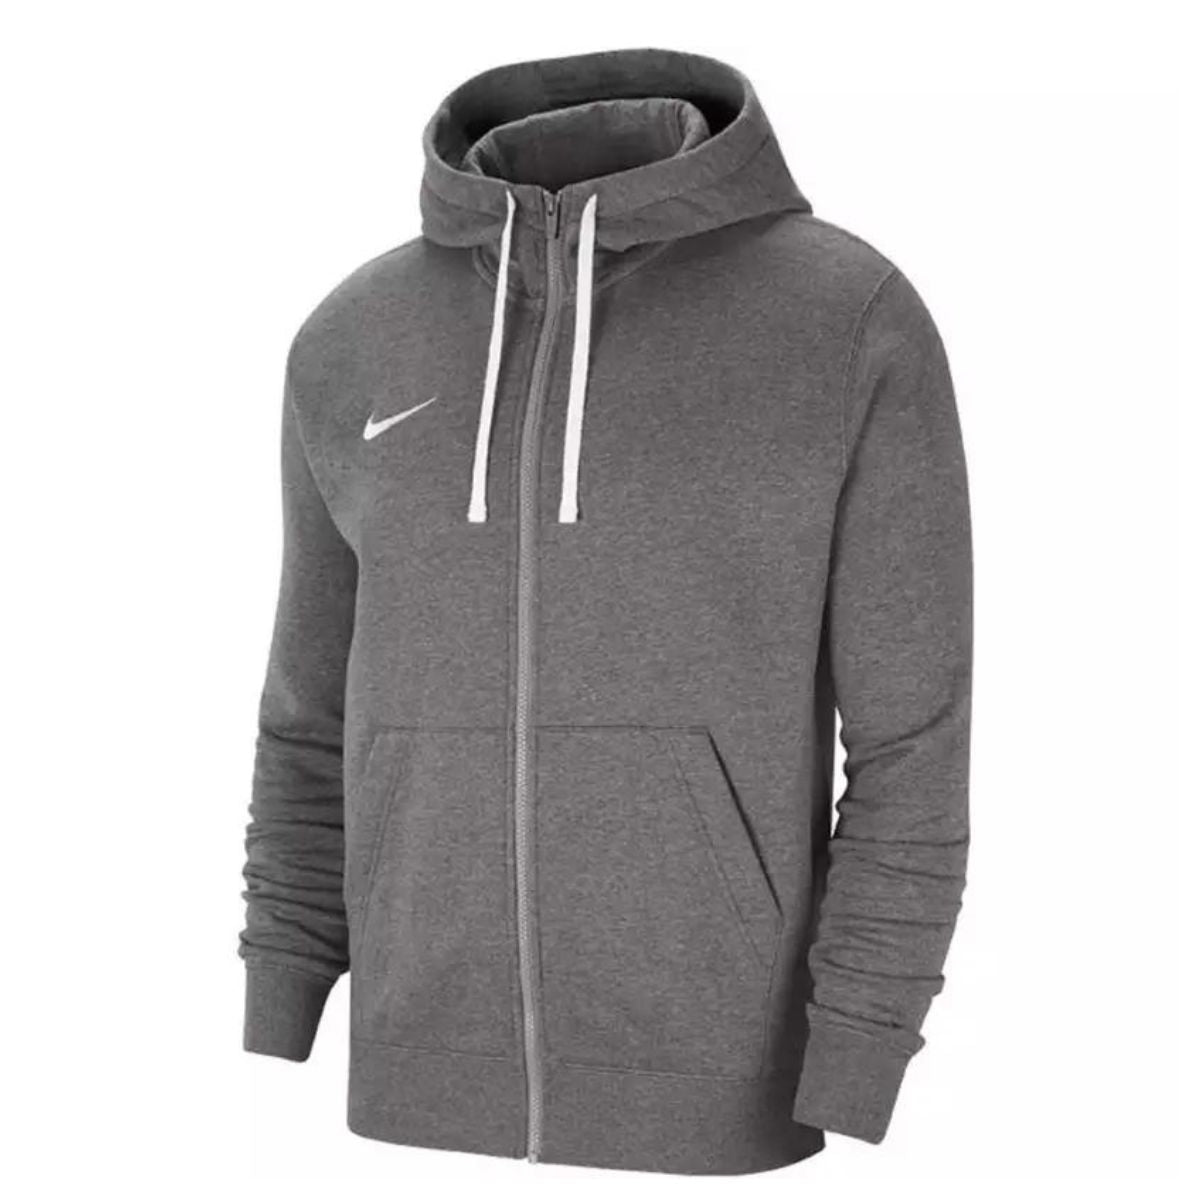 Nike Pullover Full Zip Fleece Hoodie Herren